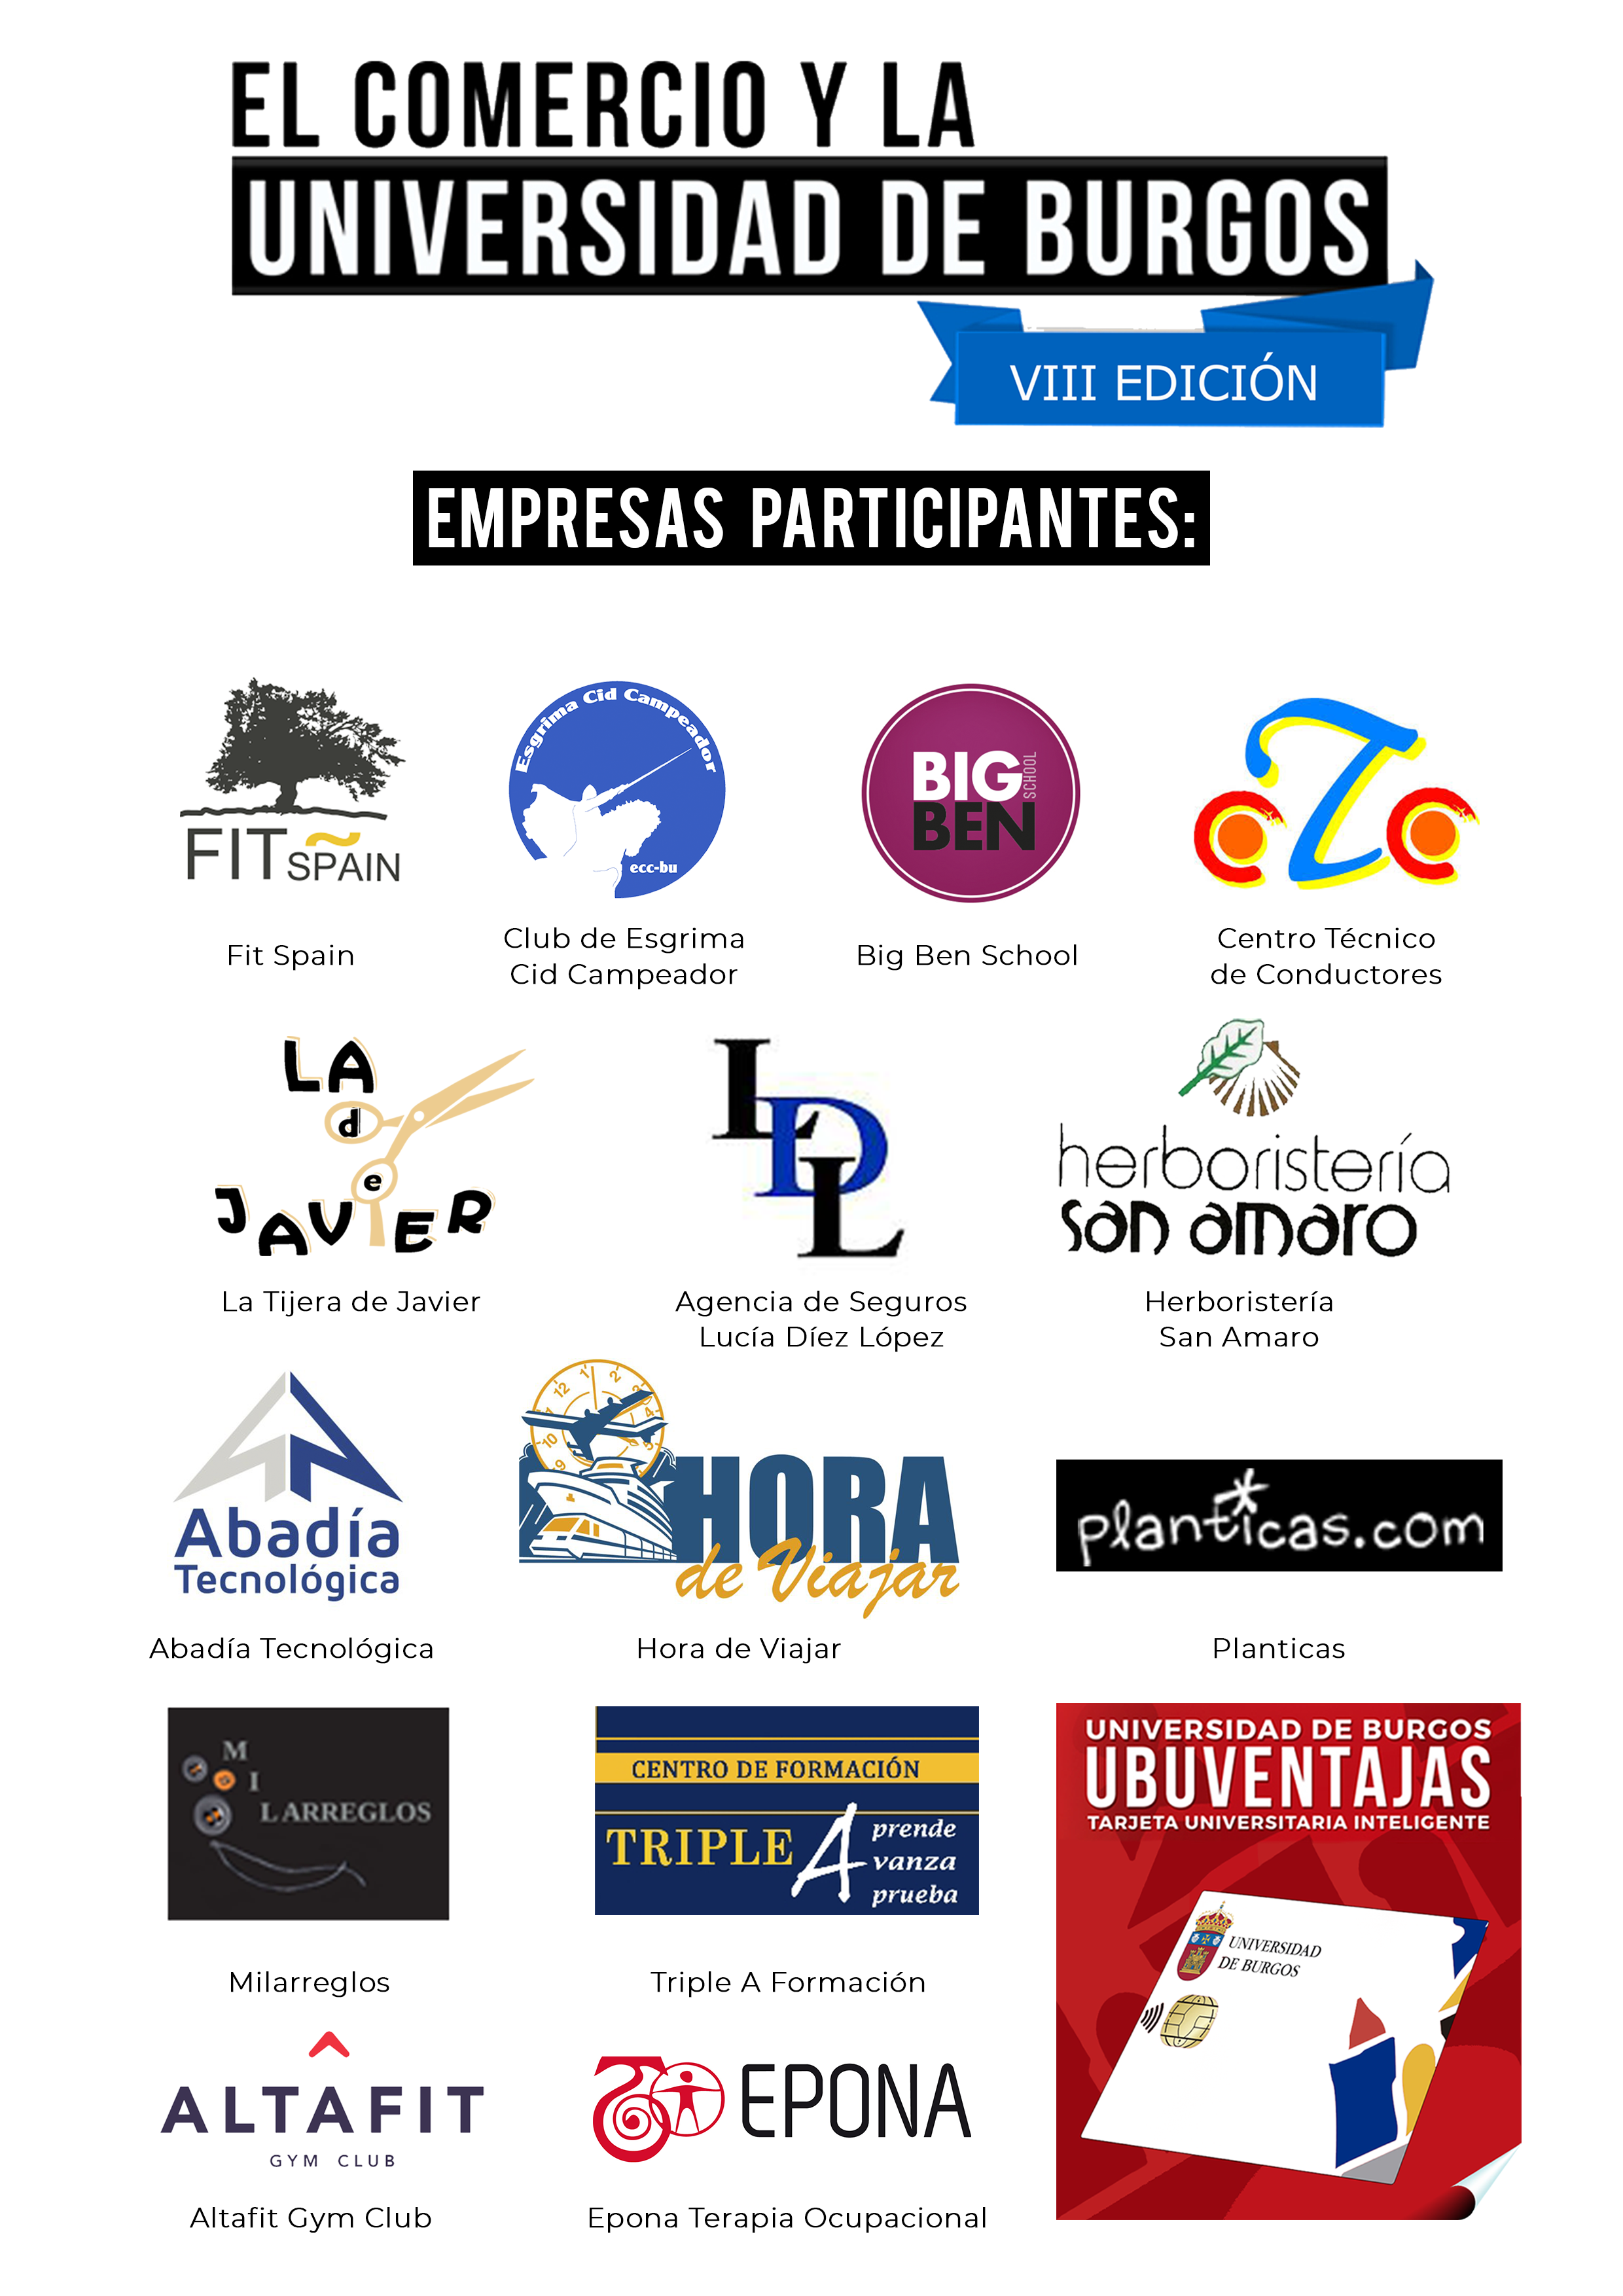 Cartel Concurso El Comercio y La Universidad y Burgos